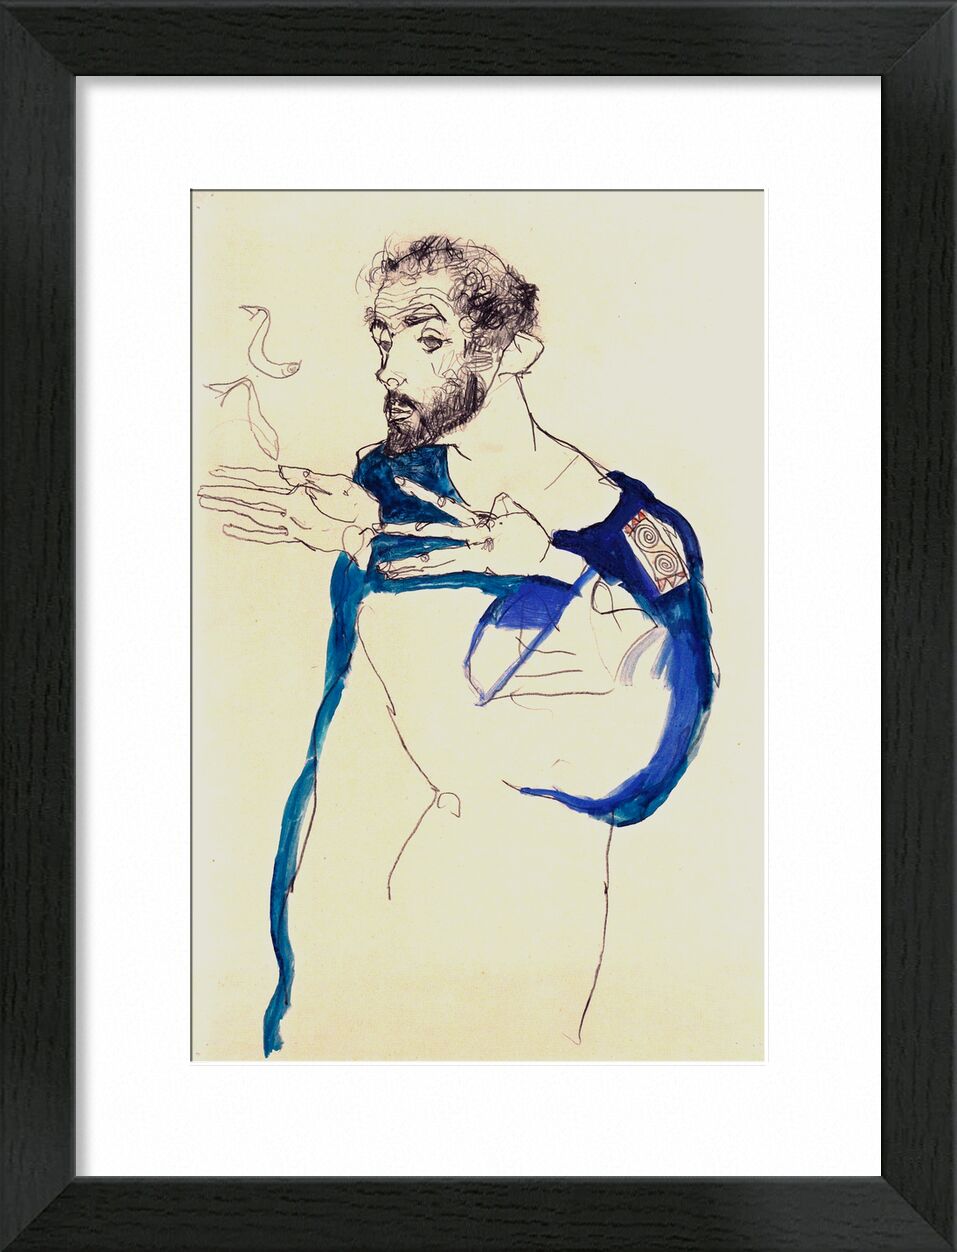 Le peintre Gustav Klimt dans Sa Blouse de Peintre Bleue, 1913 - Gustav Klimt de Beaux-arts, Prodi Art, cigarette, fumée, dessin, autoportrait, peinture, peintre, KLIMT